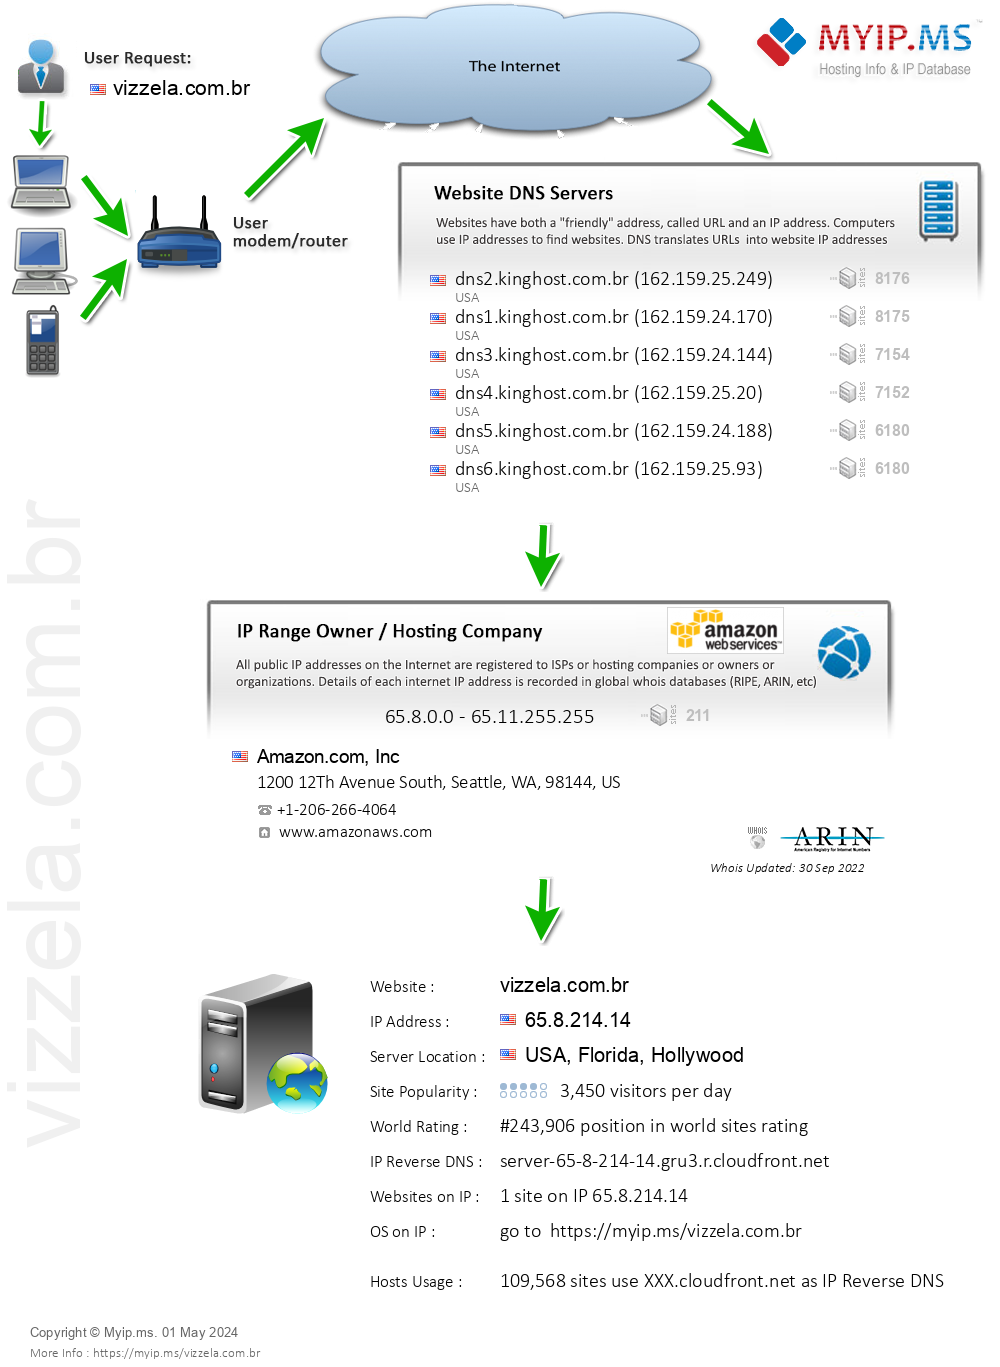 Vizzela.com.br - Website Hosting Visual IP Diagram